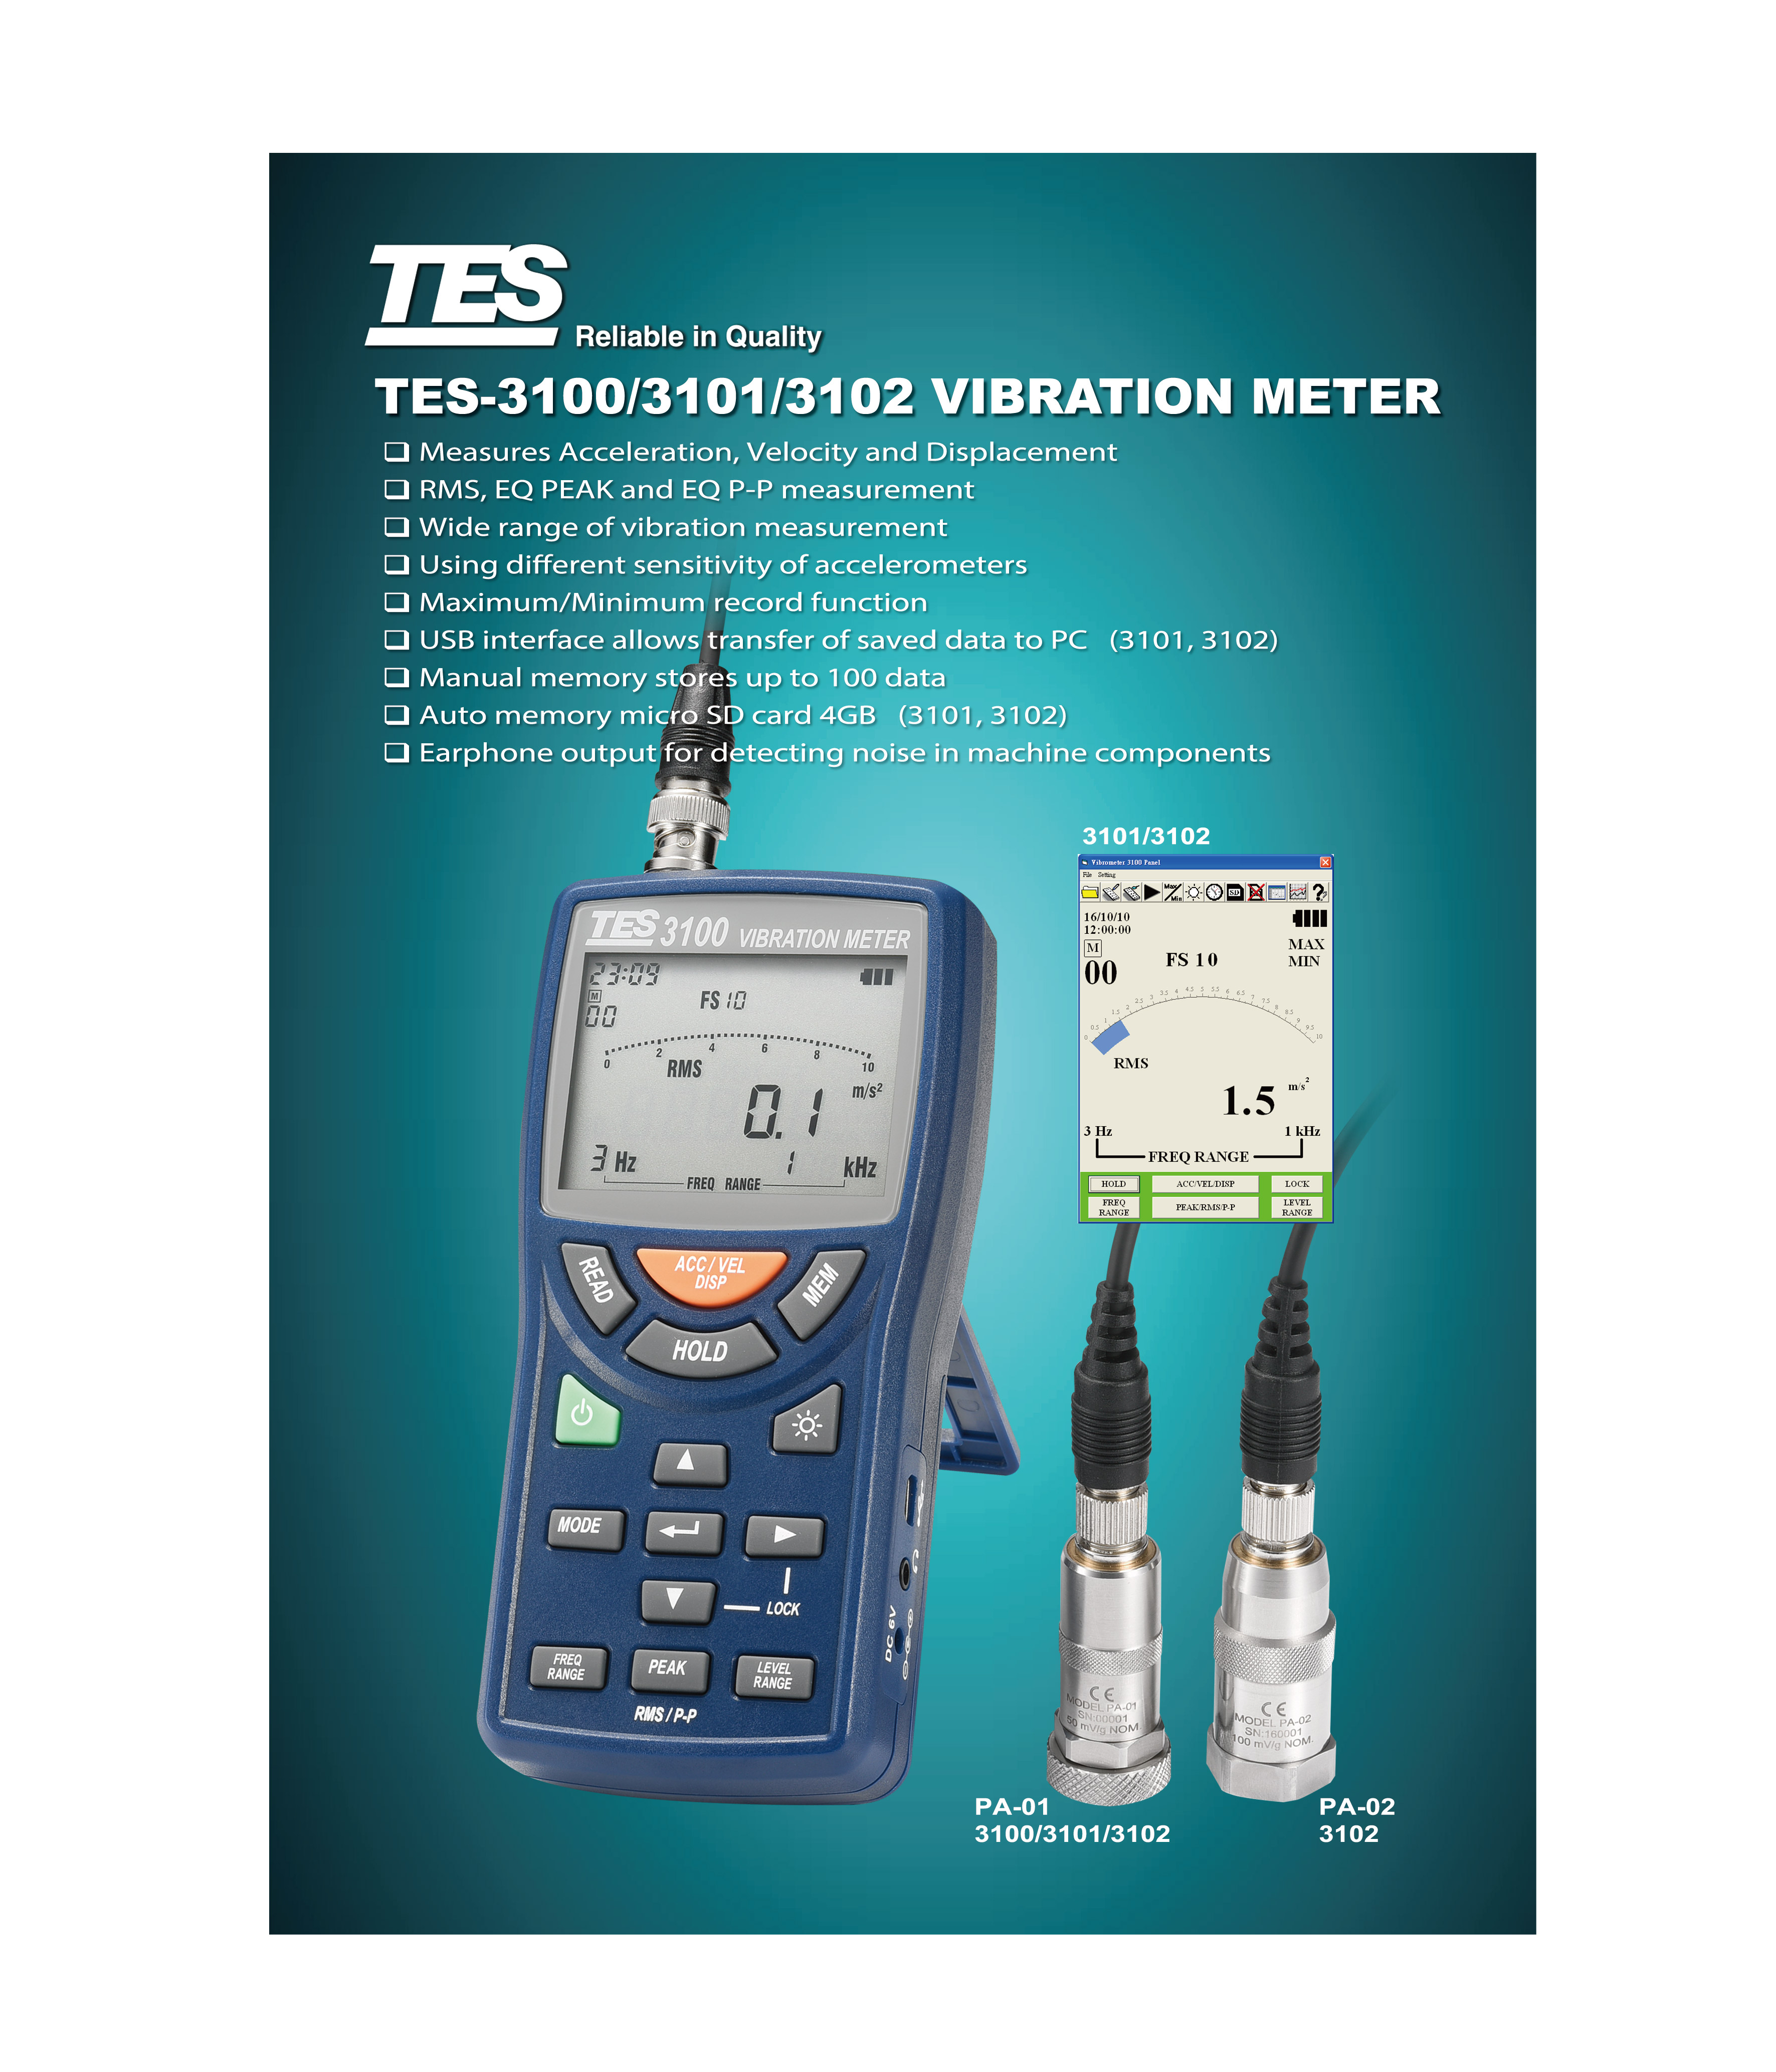 TES-3100 VIBRATION METER